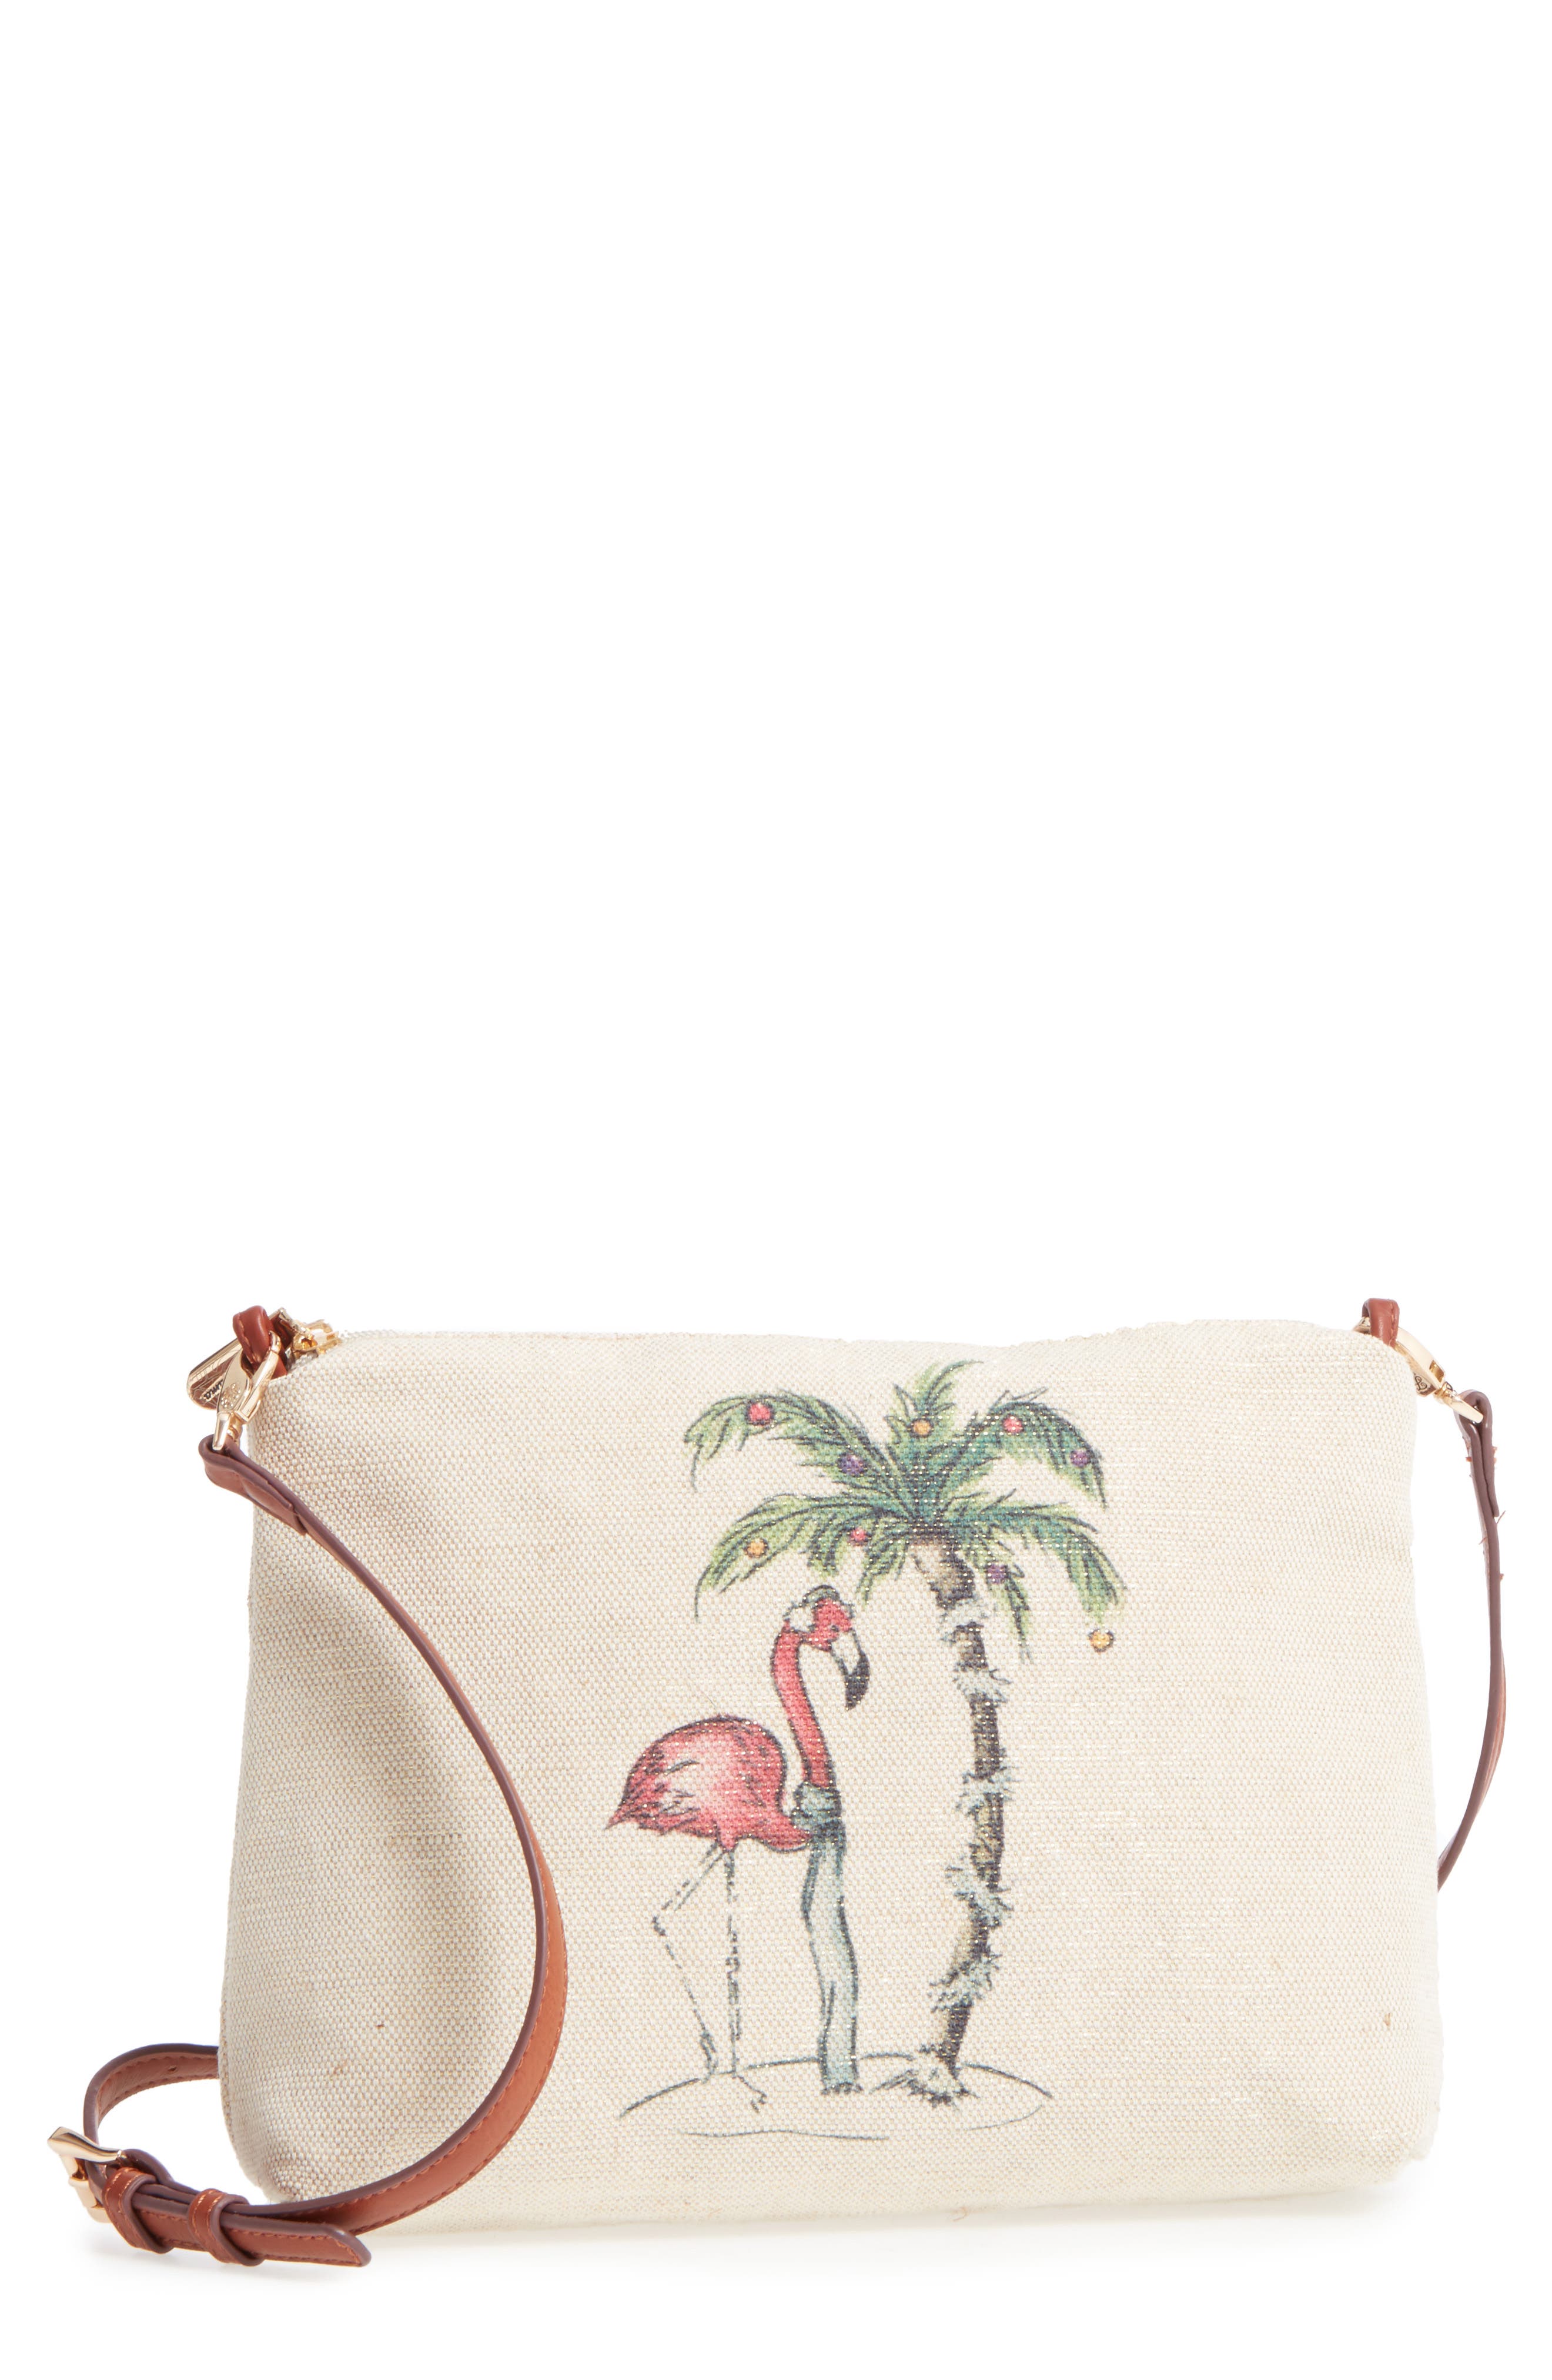 tommy bahama crossbody purse